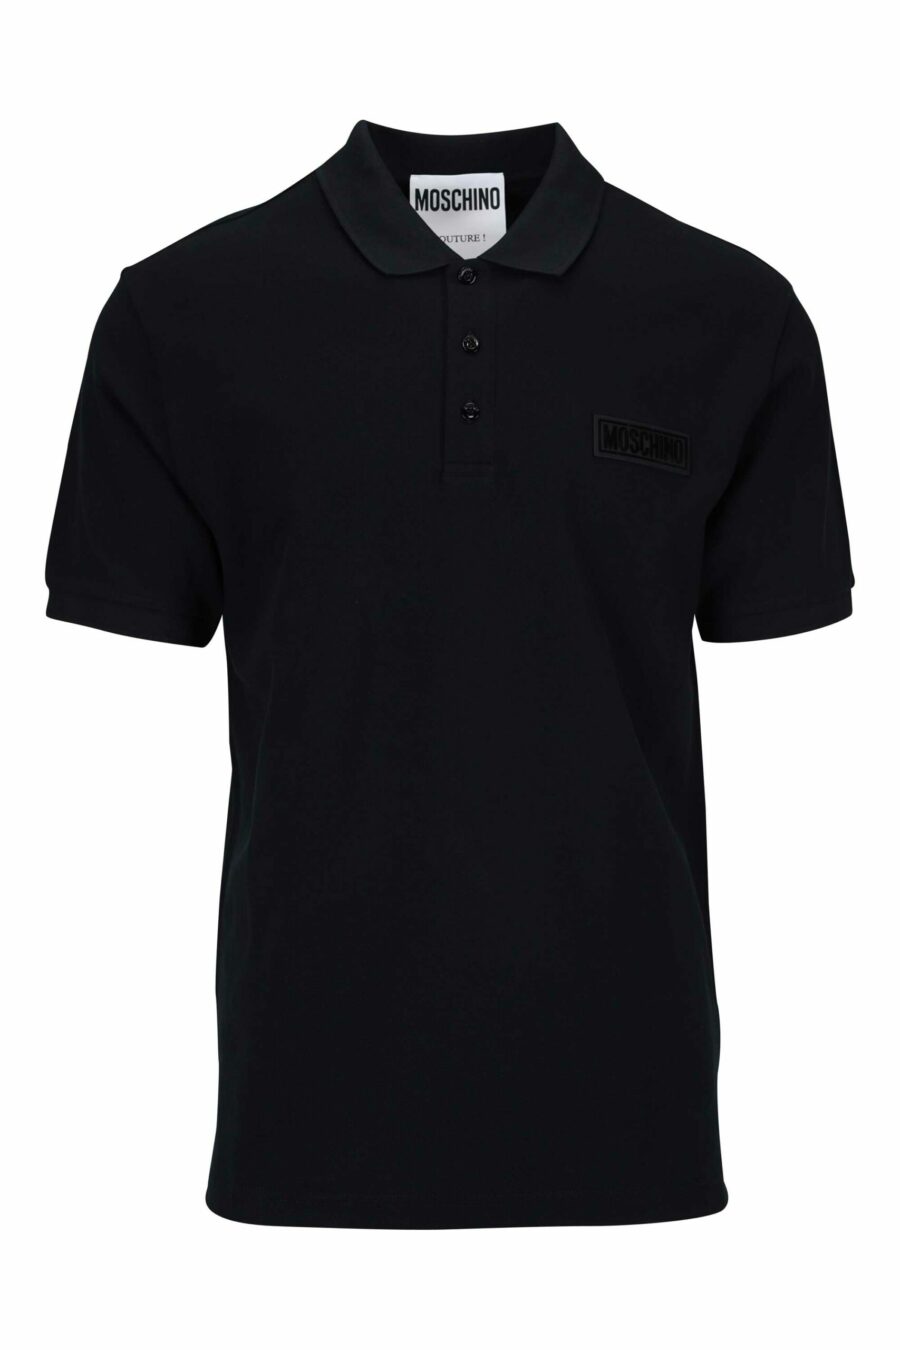 Schwarzes Poloshirt mit weißem Mini-Logo-Label - 667113402352 skaliert